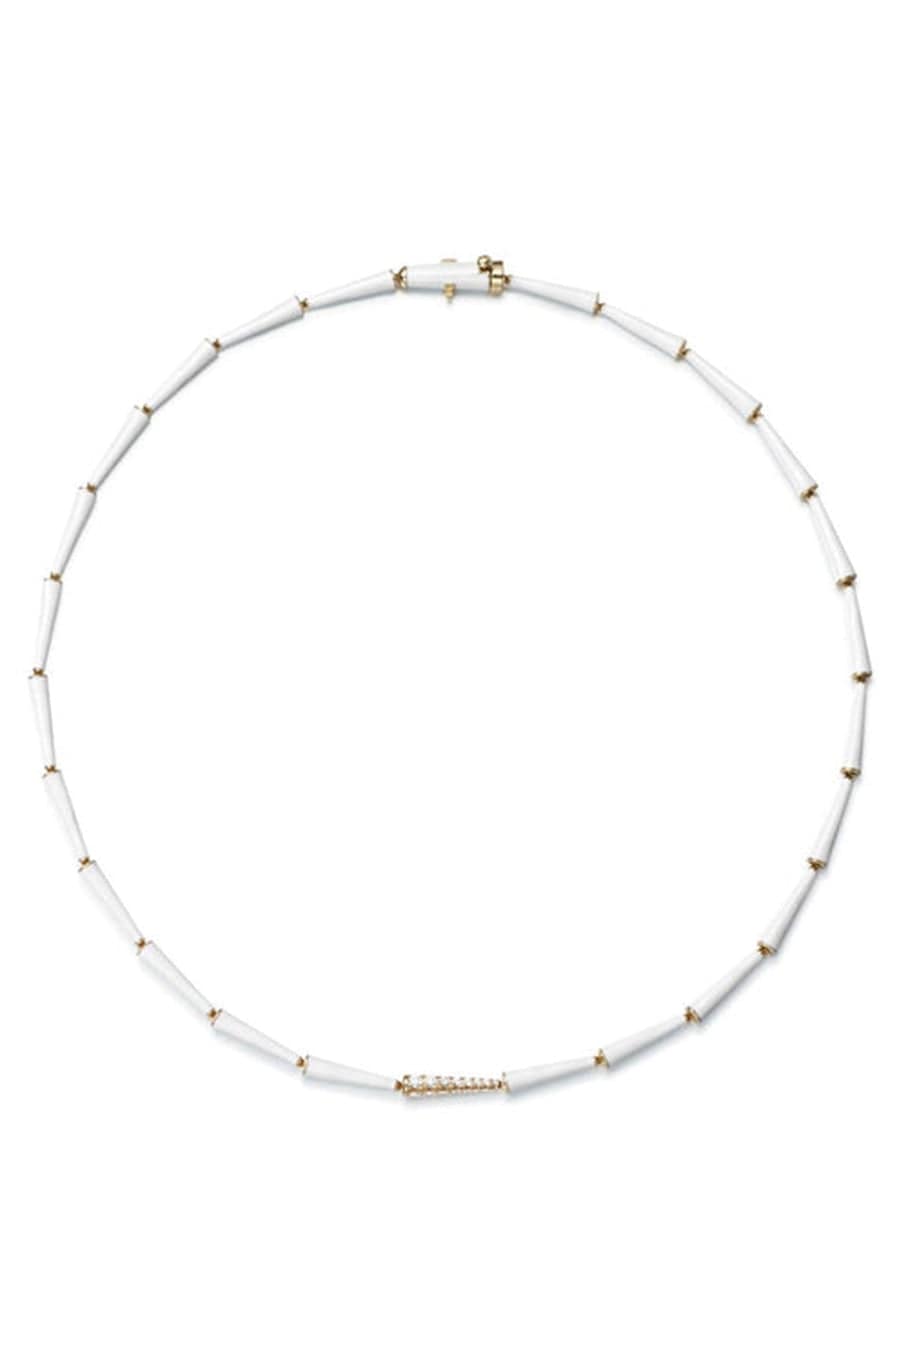 MELISSA KAYE-Lola Linked White Enamel and Diamond Necklace-YELLOW GOLD